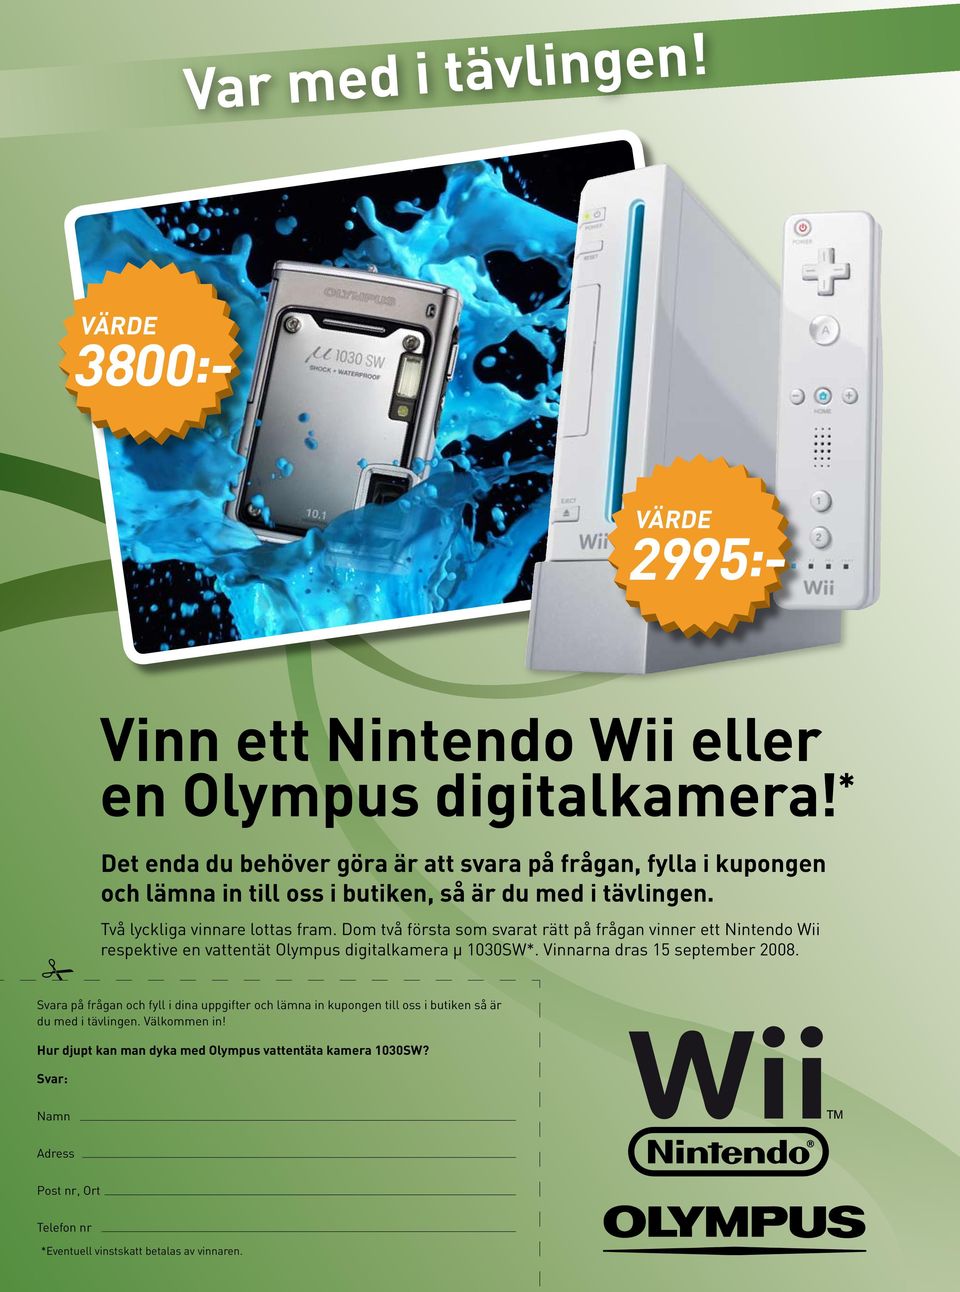 Dom två första som svarat rätt på frågan vinner ett Nintendo Wii respektive en vattentät Olympus digitalkamera µ 1030SW*. Vinnarna dras 15 september 2008.